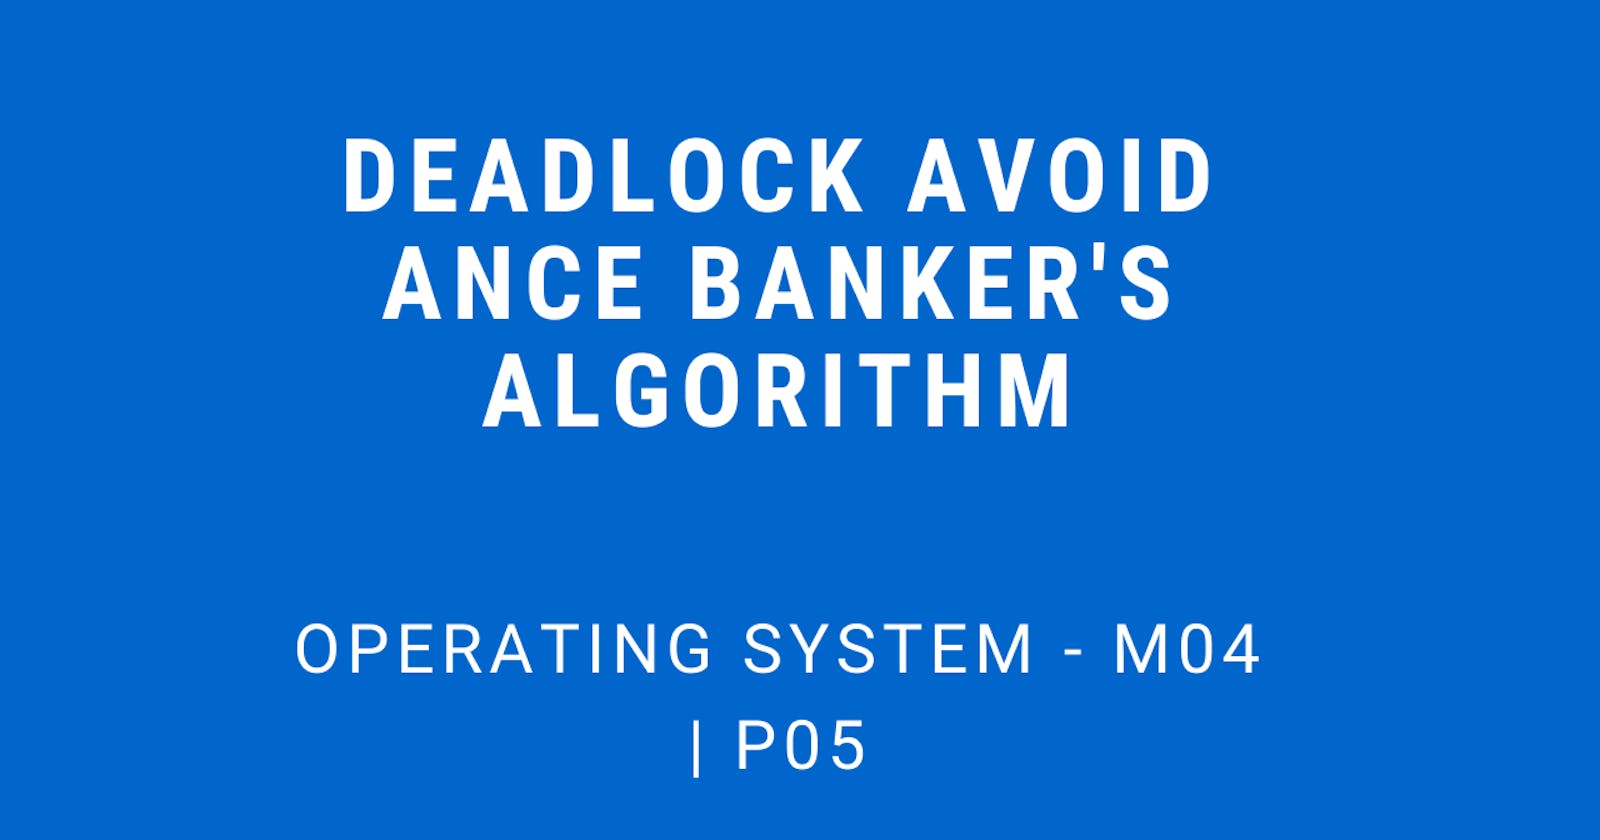 Deadlock Avoidance (banker's Algorithm) | Operating System - M04 P05